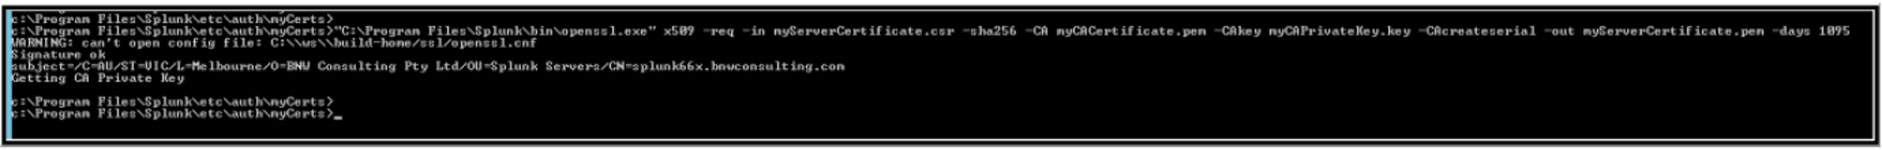 KB 095 - Splunk - Create Self-signed SSL Certificate V2 14